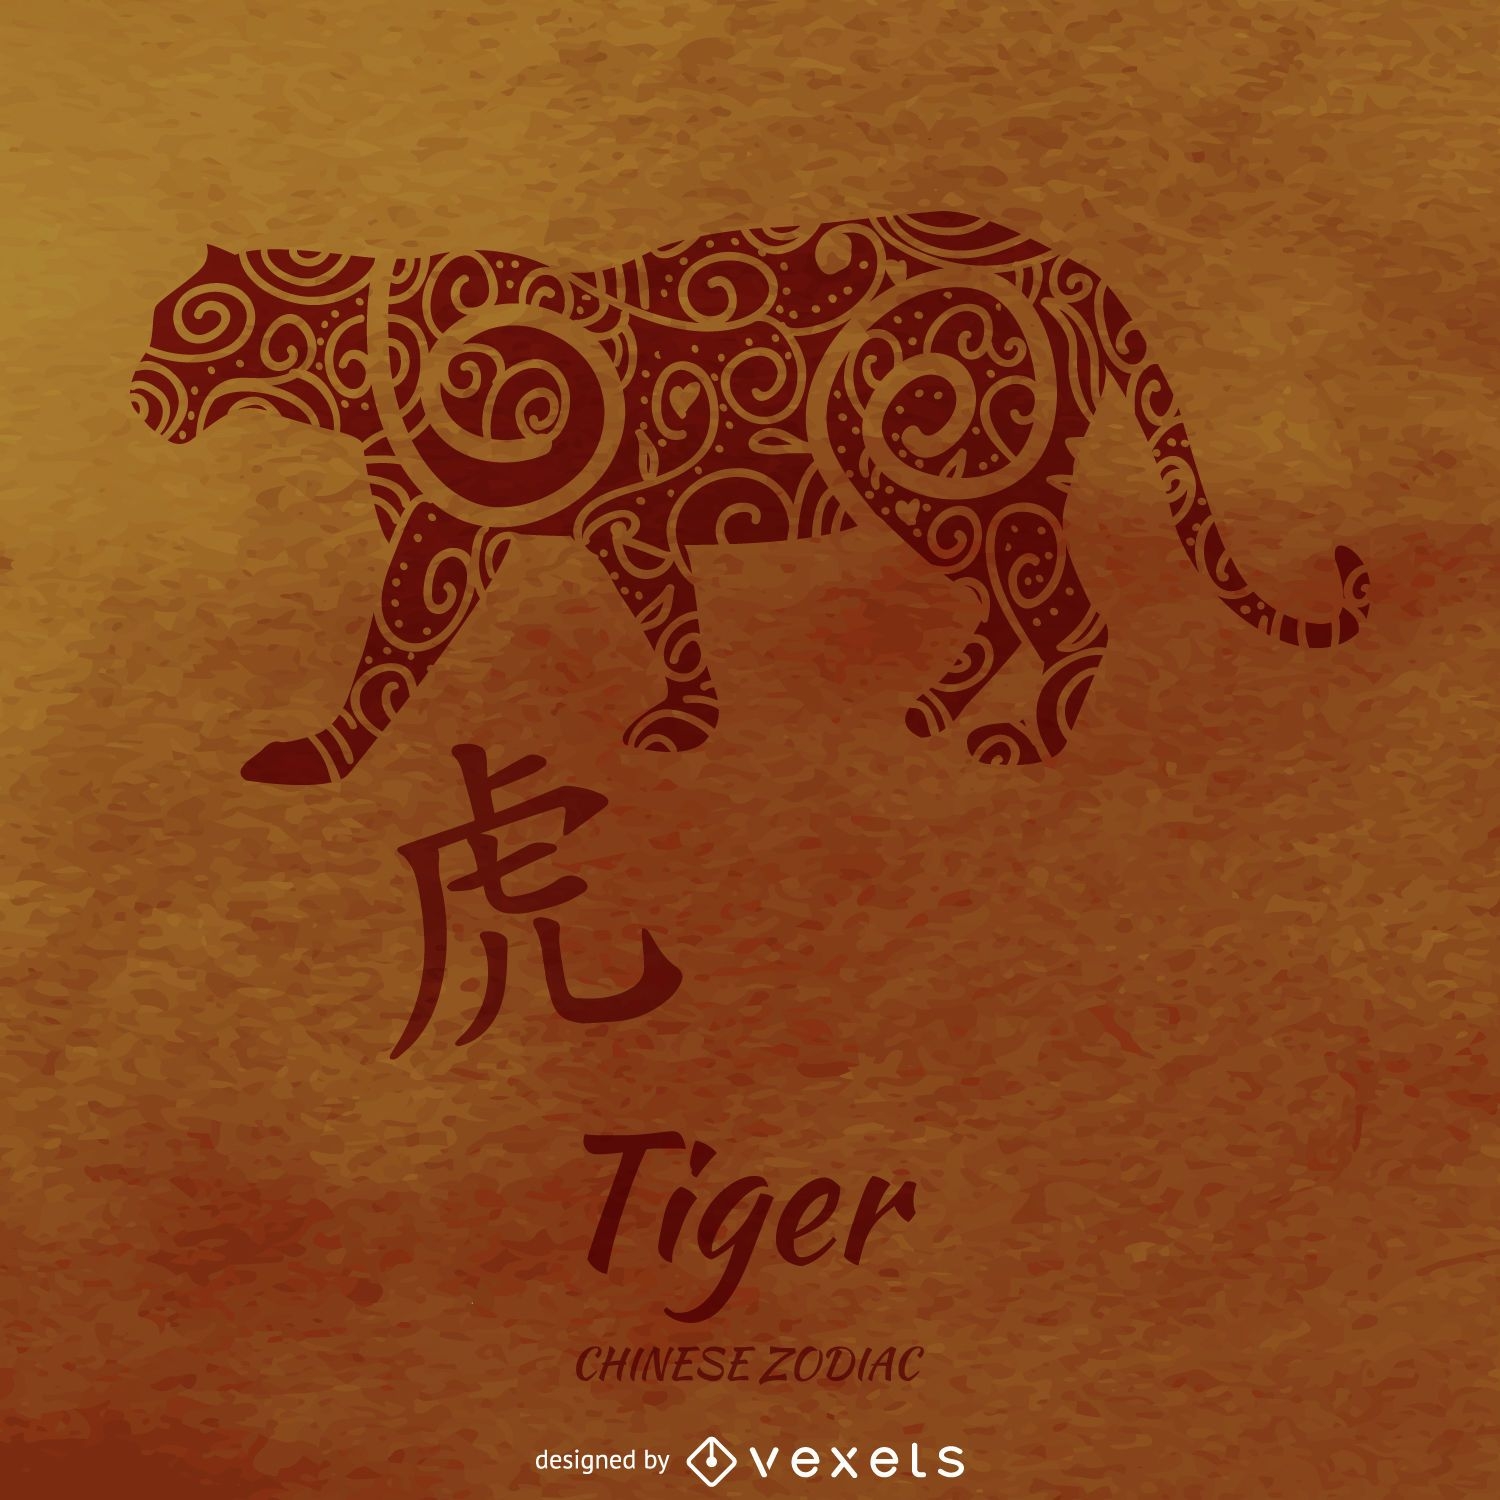 Chinesischer Tierkreis mit Tigerzeichnung